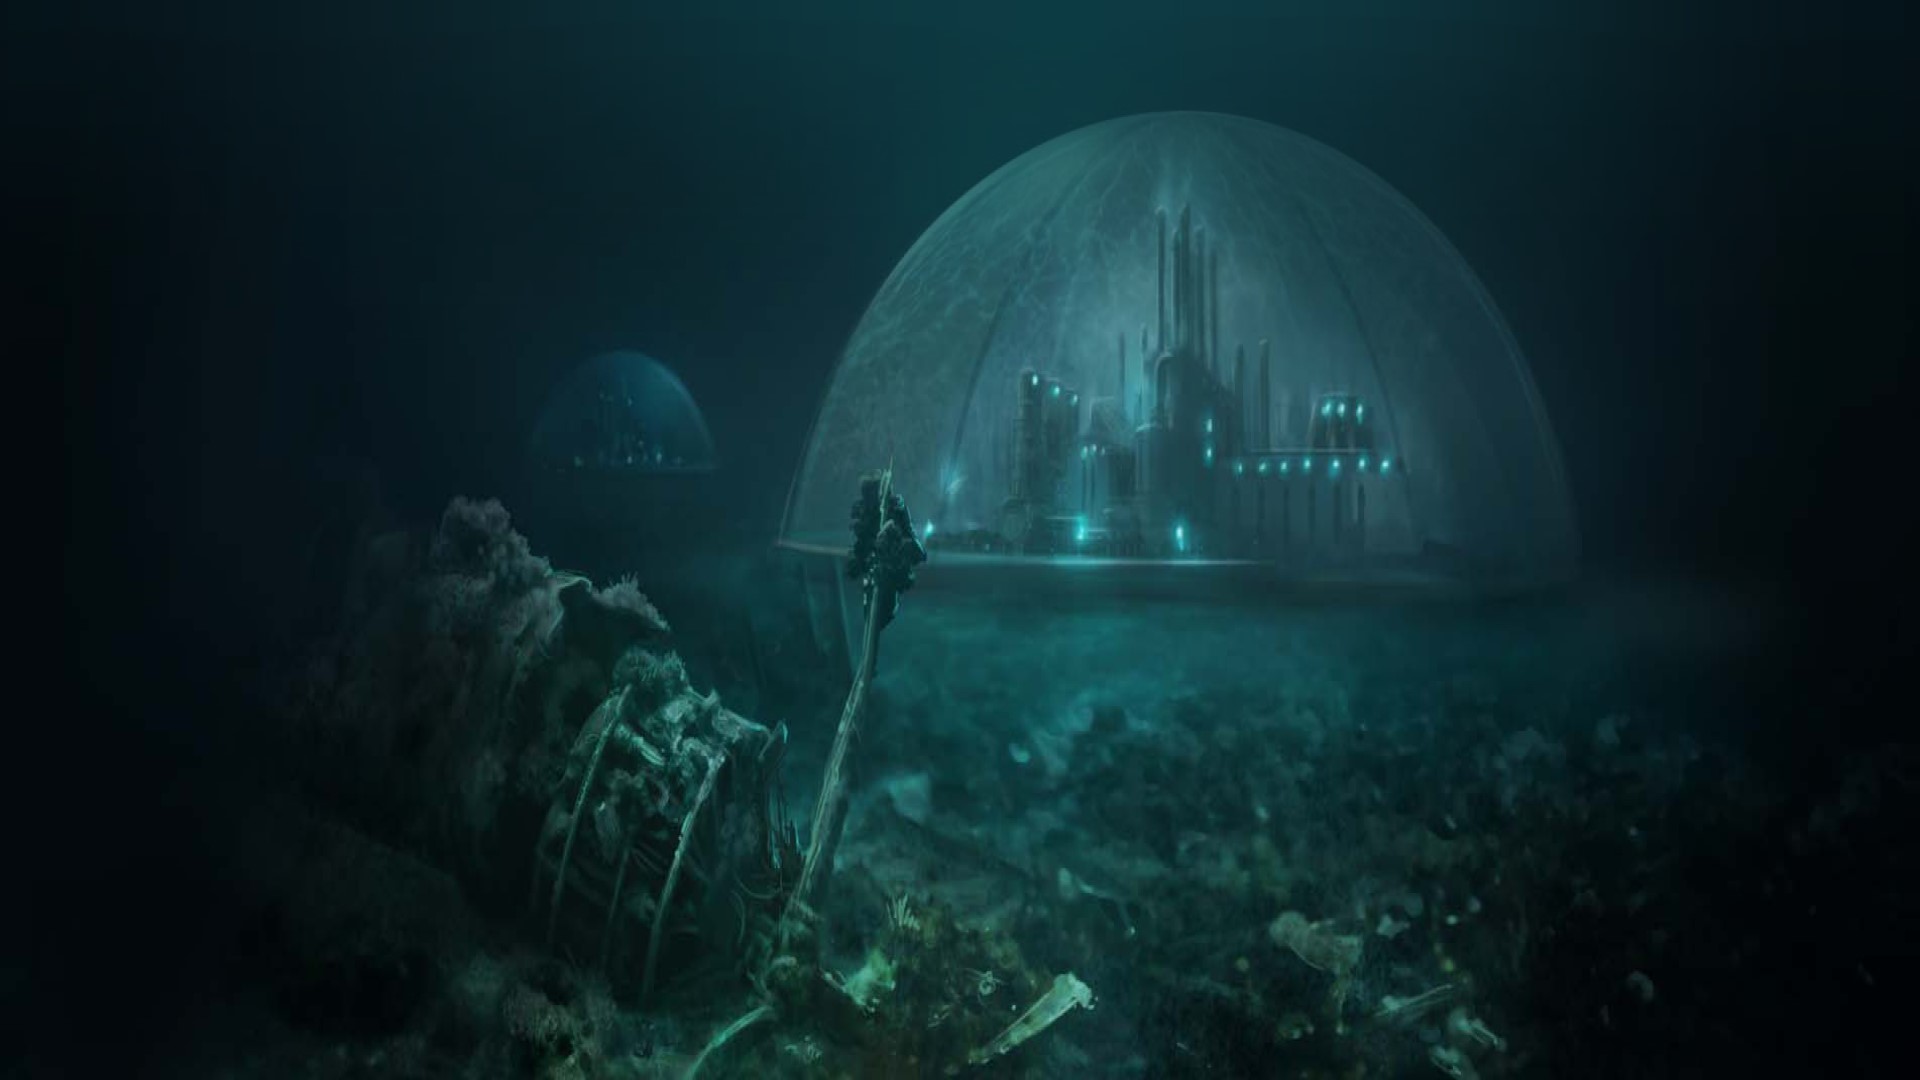 เกมกลยุทธ์มือถือที่ดีที่สุด: Suberfuge รูปภาพแสดงเมืองในโดมใต้ทะเล